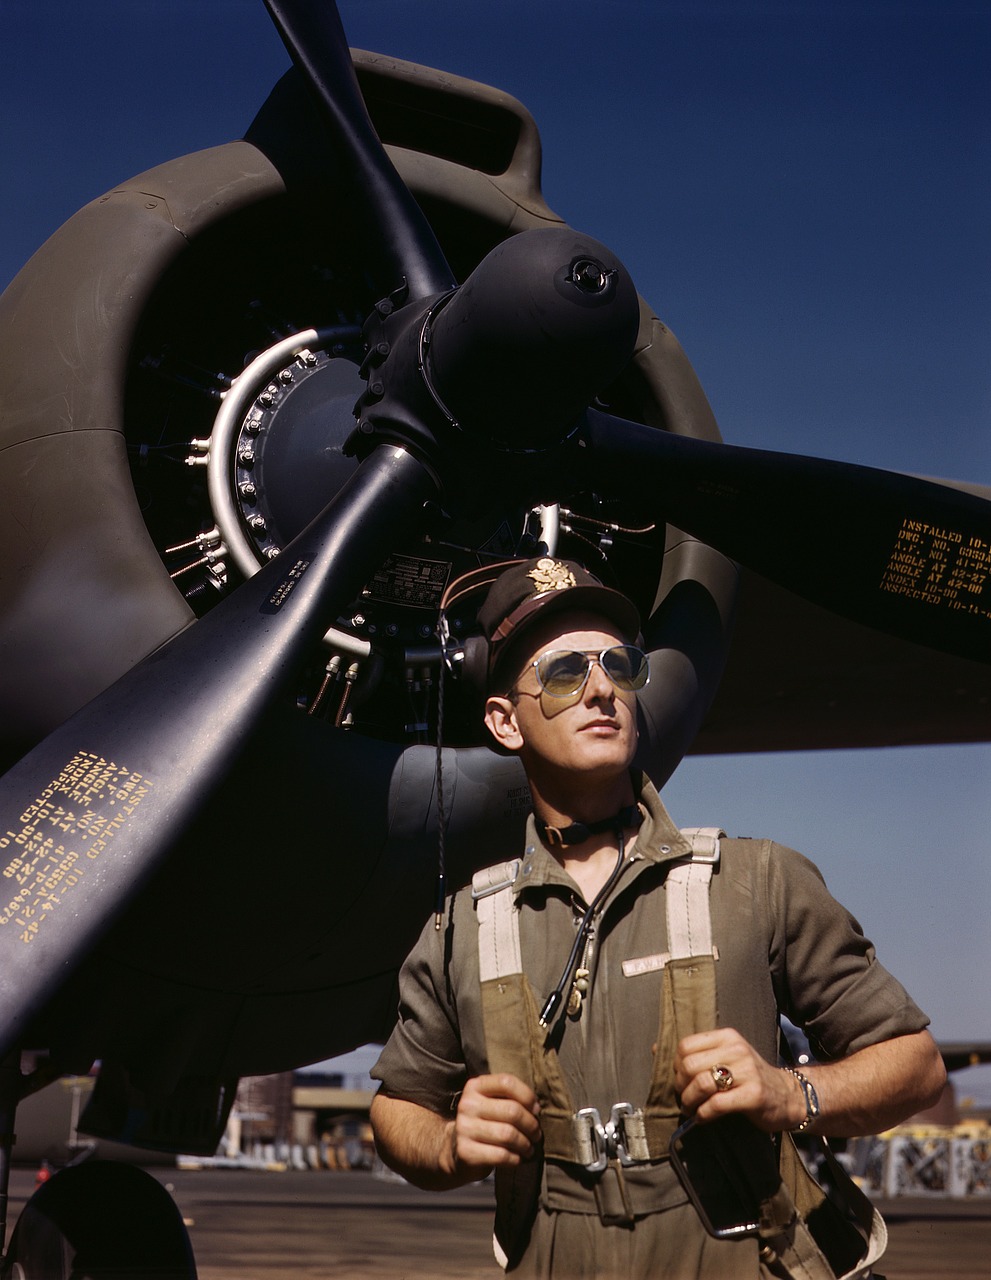 Pilotas, Orlaivių Pilotai, Skrajutė, Propeleris, Propelerio Plokštuma, Orlaivis, Tai Mike Medžiotojas, 1942 M. Jungtinėse Amerikos Valstijose, Jungtinės Valstijos, Antrasis Pasaulinis Karas